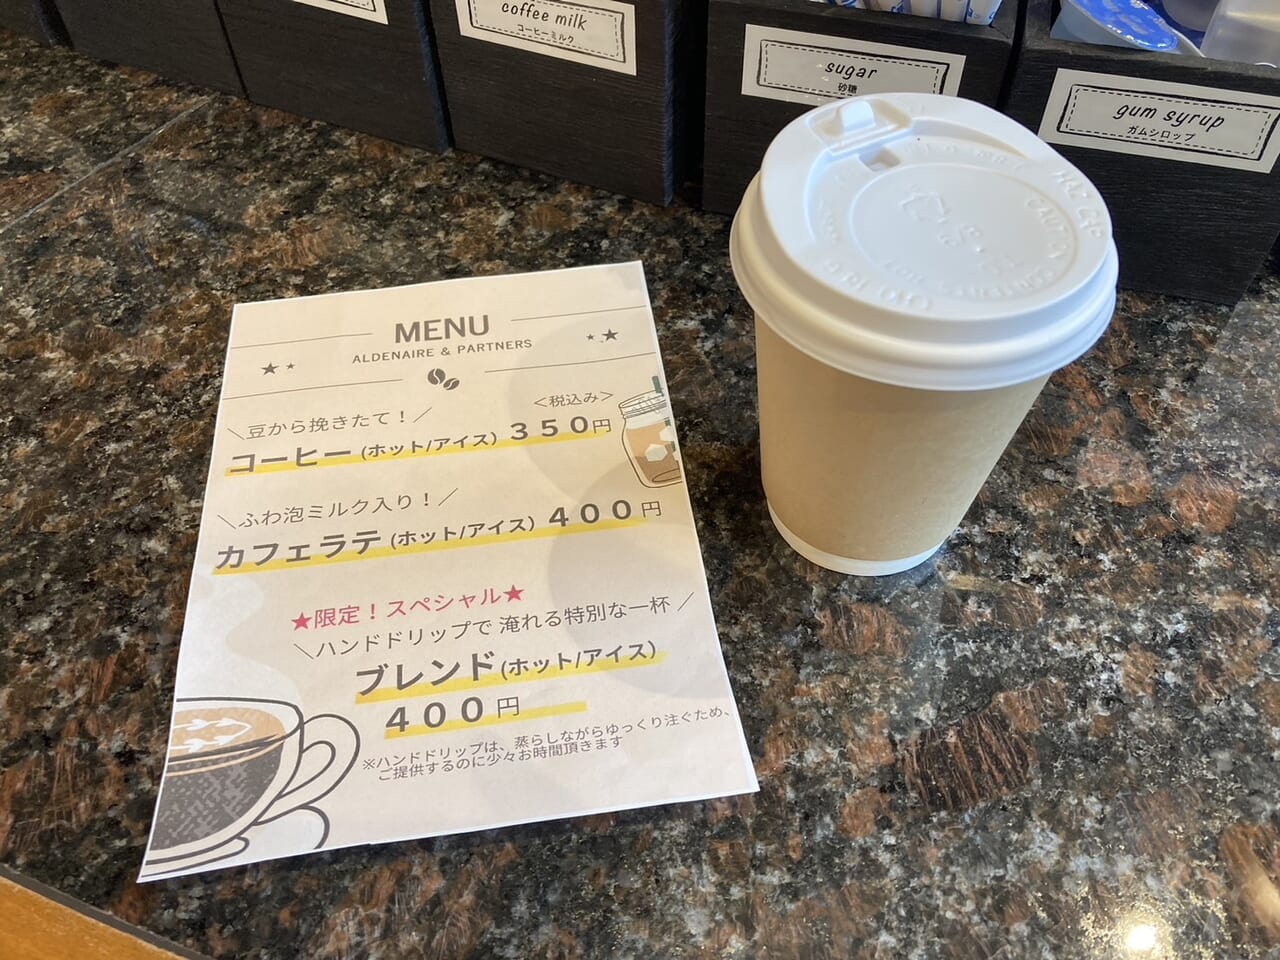 初富保健病院カフェ出店されたブルーベリーふぁ0ム新松戸のコーヒー